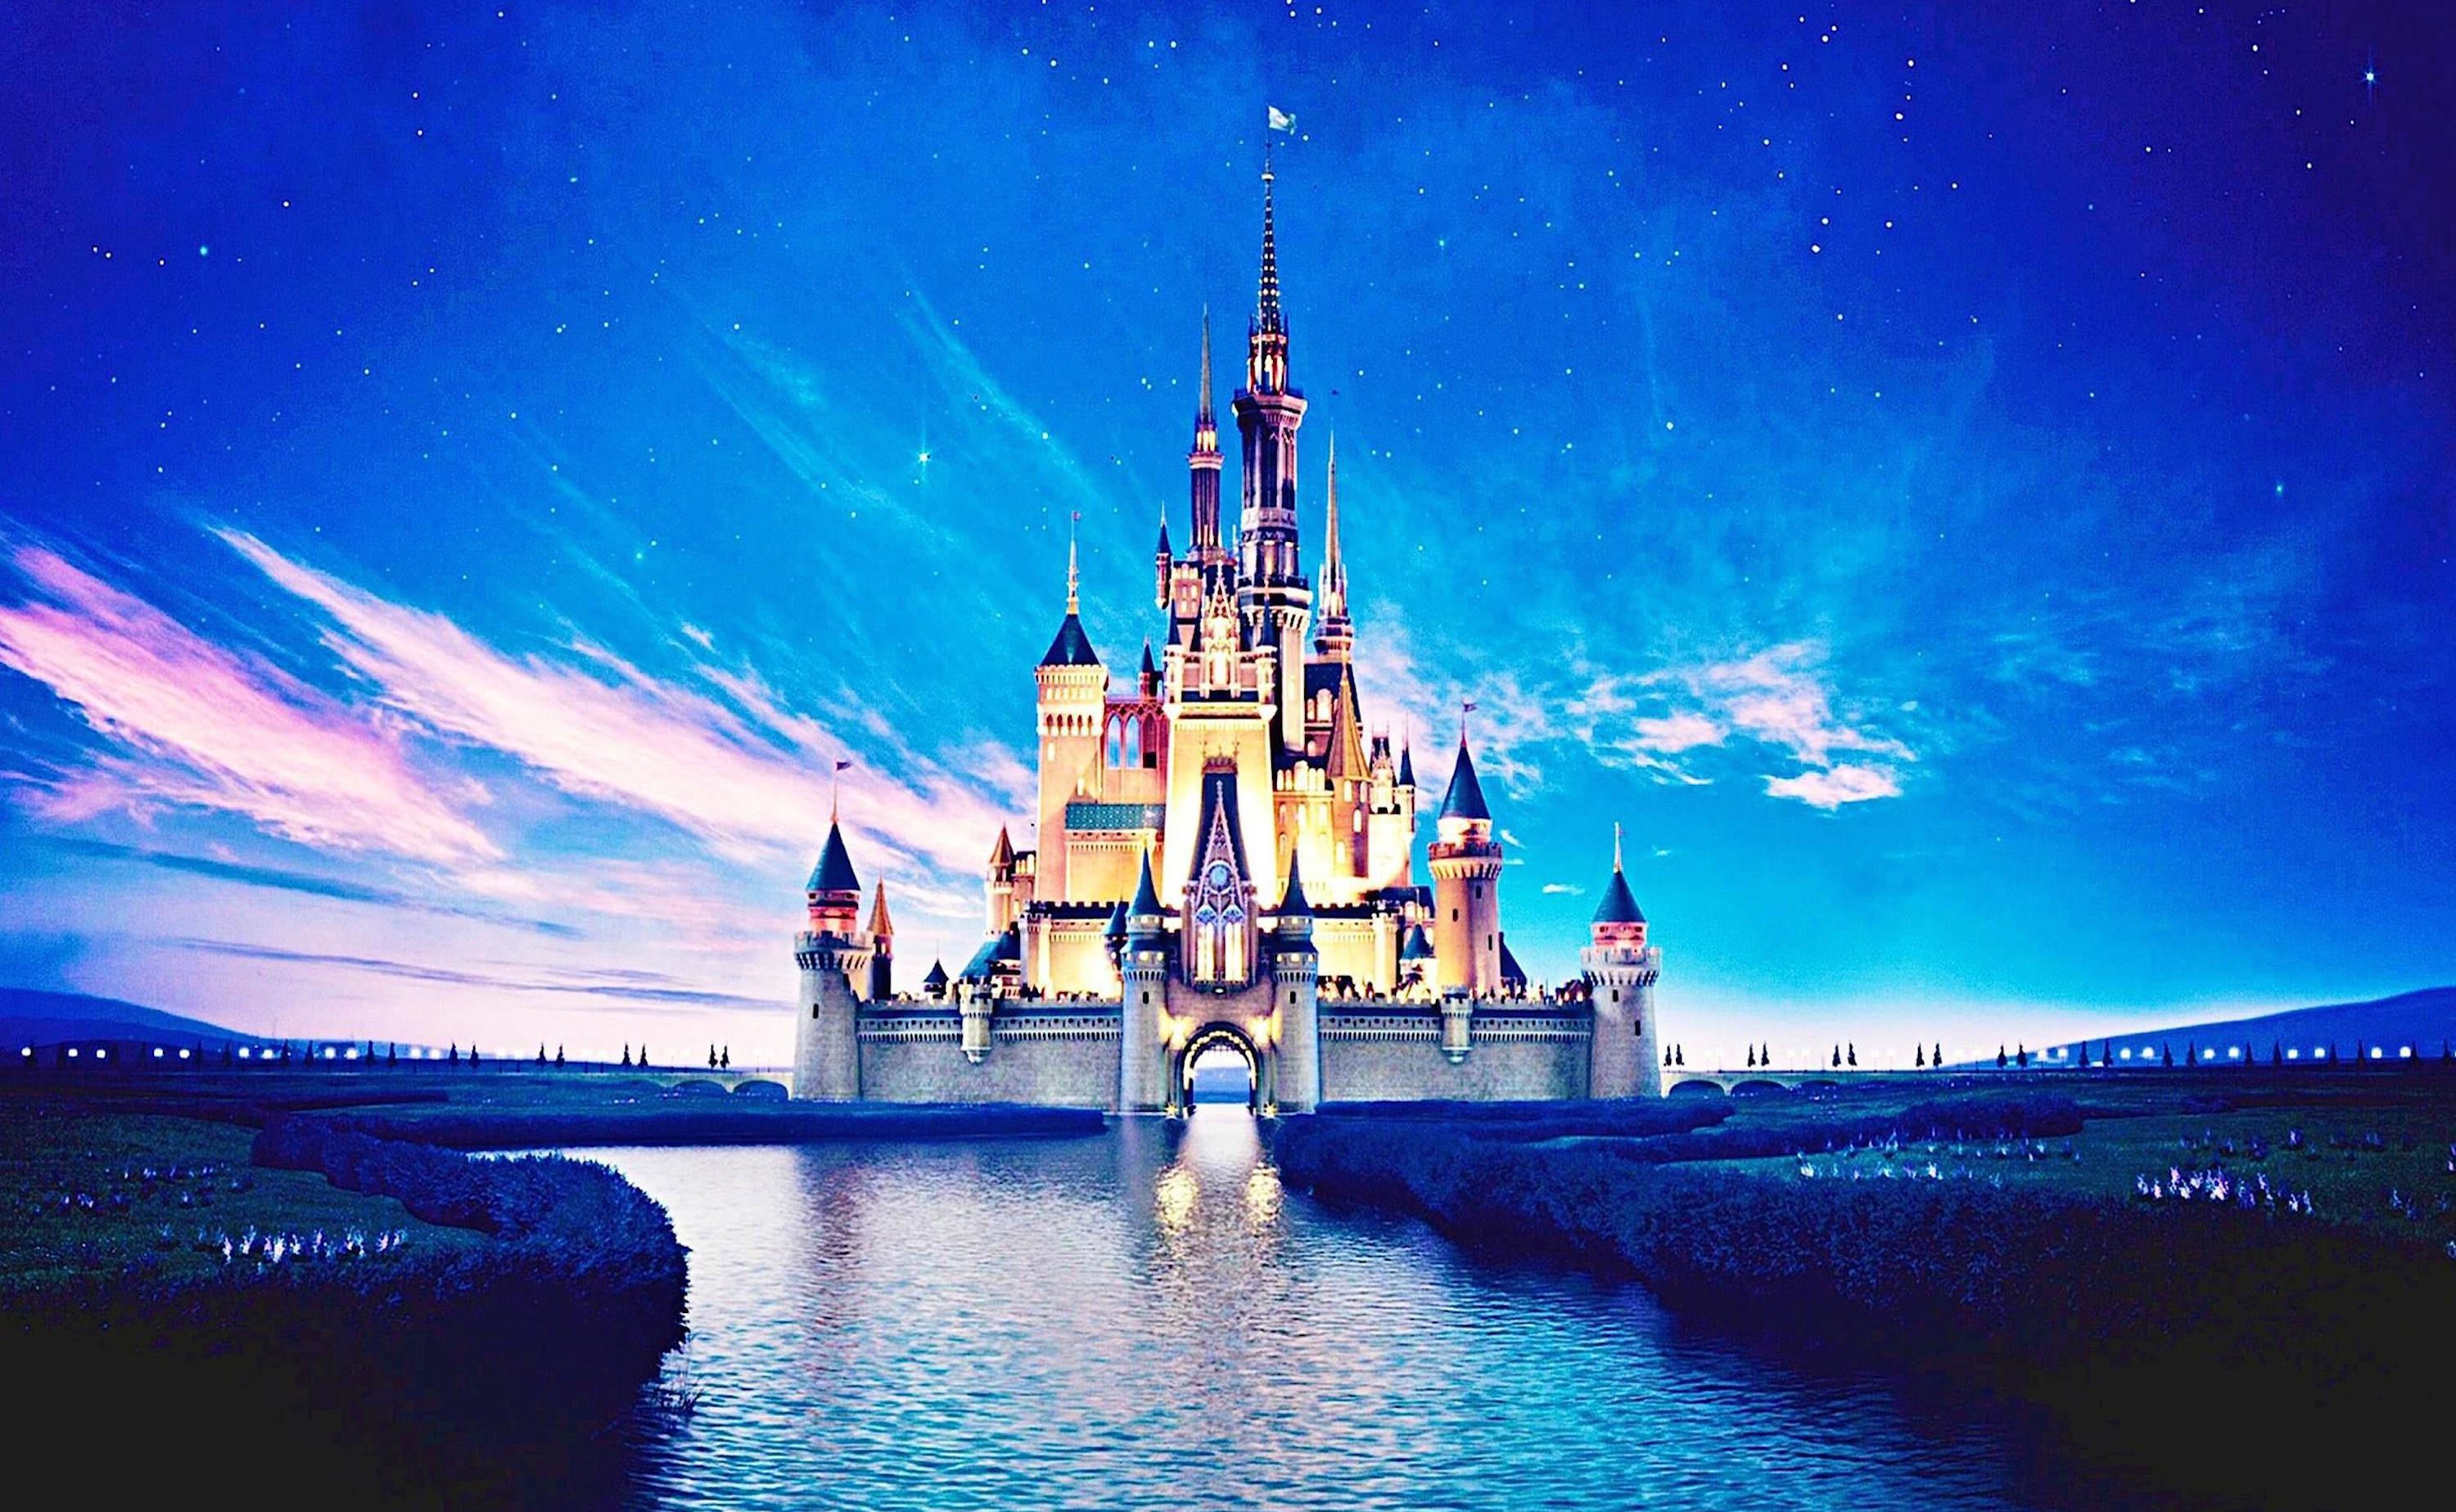 Disney Frozen Wallpaper - Disney Castle Wallpaper Hd , HD Wallpaper & Backgrounds